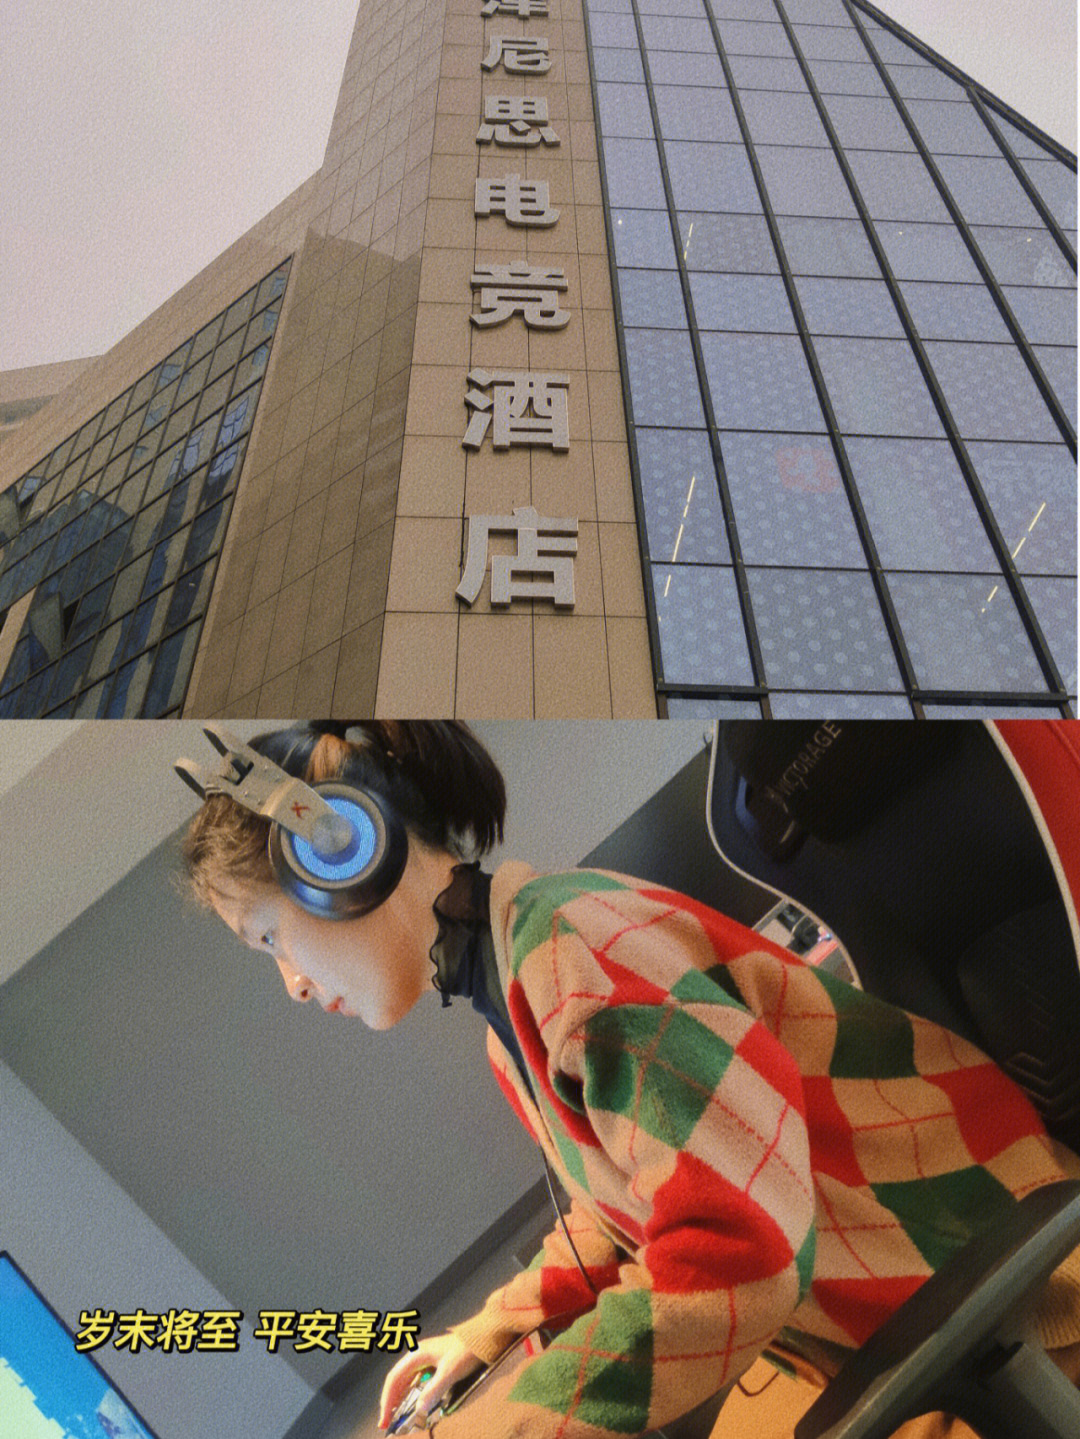 谷饶六斗酒店4楼图片